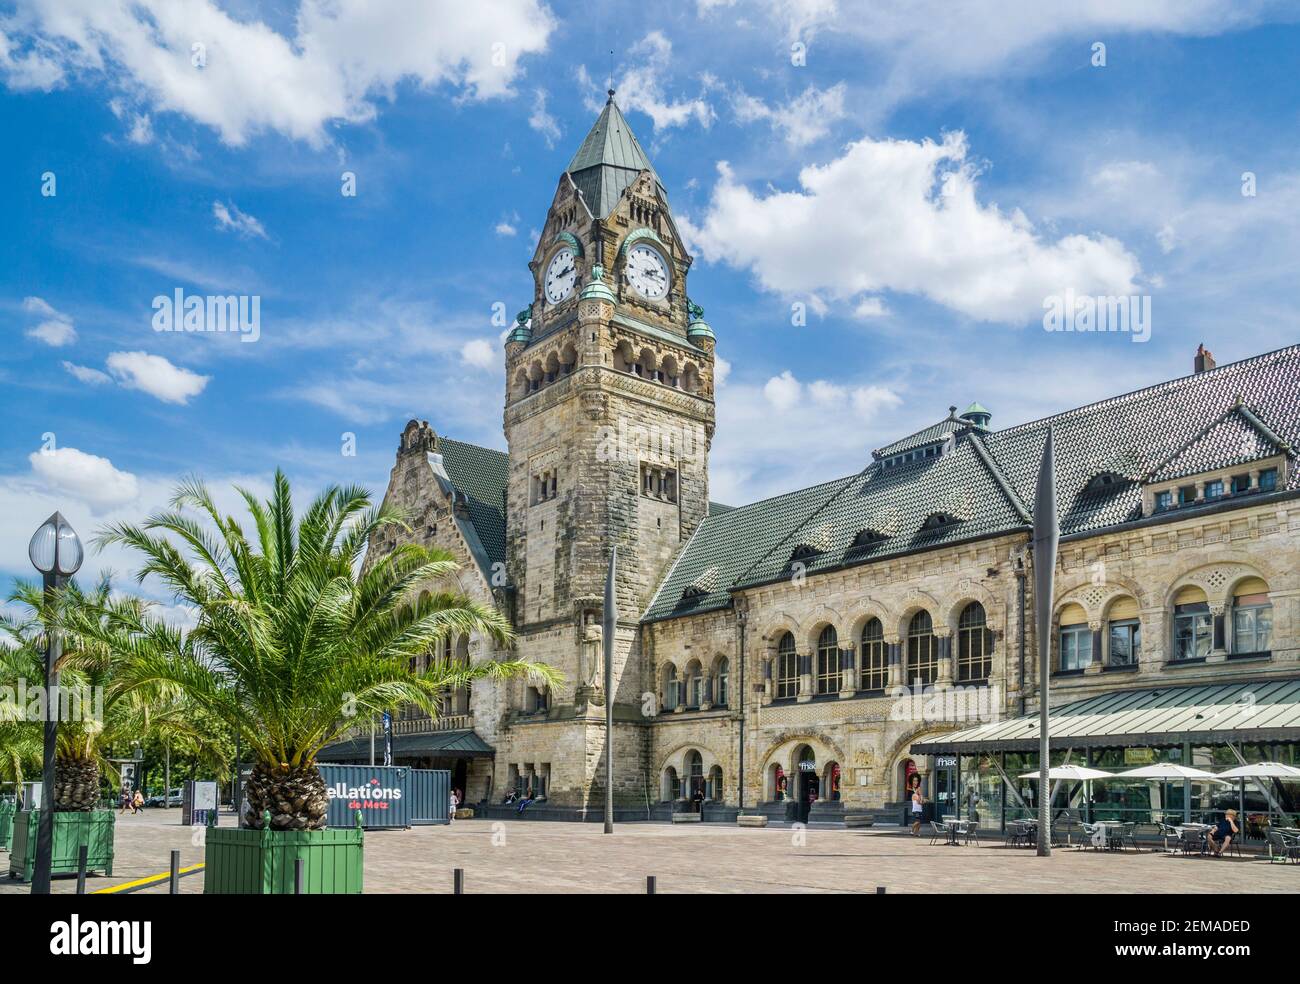 Gare de Metz-Ville, das neoromanische Bahnhofsgebäude erinnert architektonisch an die Form einer Kirche mit Uhrenturm, Metz, Lorr Stockfoto